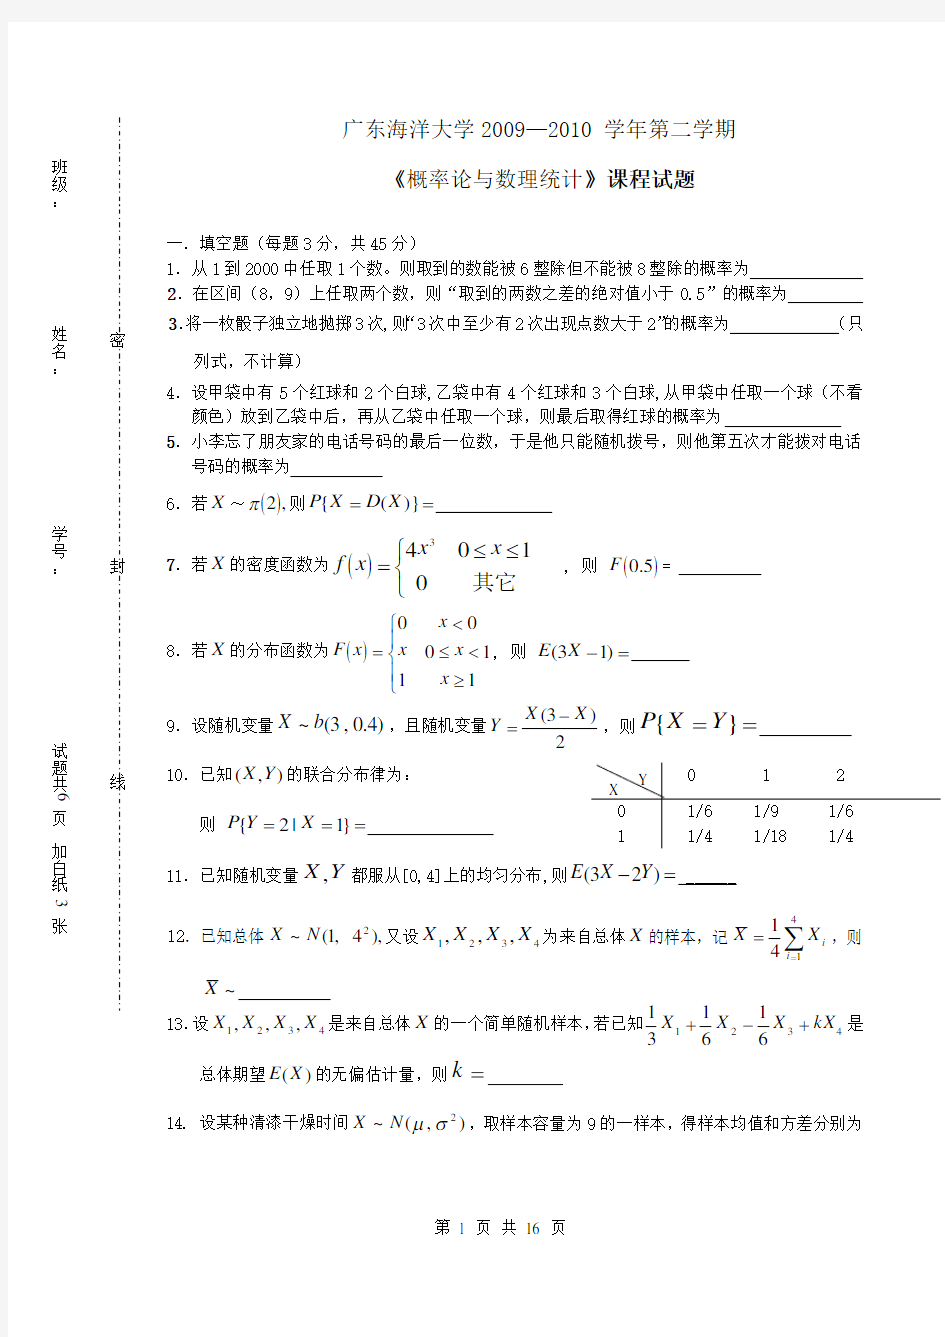 广东海洋大学概率论与数理统计历年考试试卷_答案